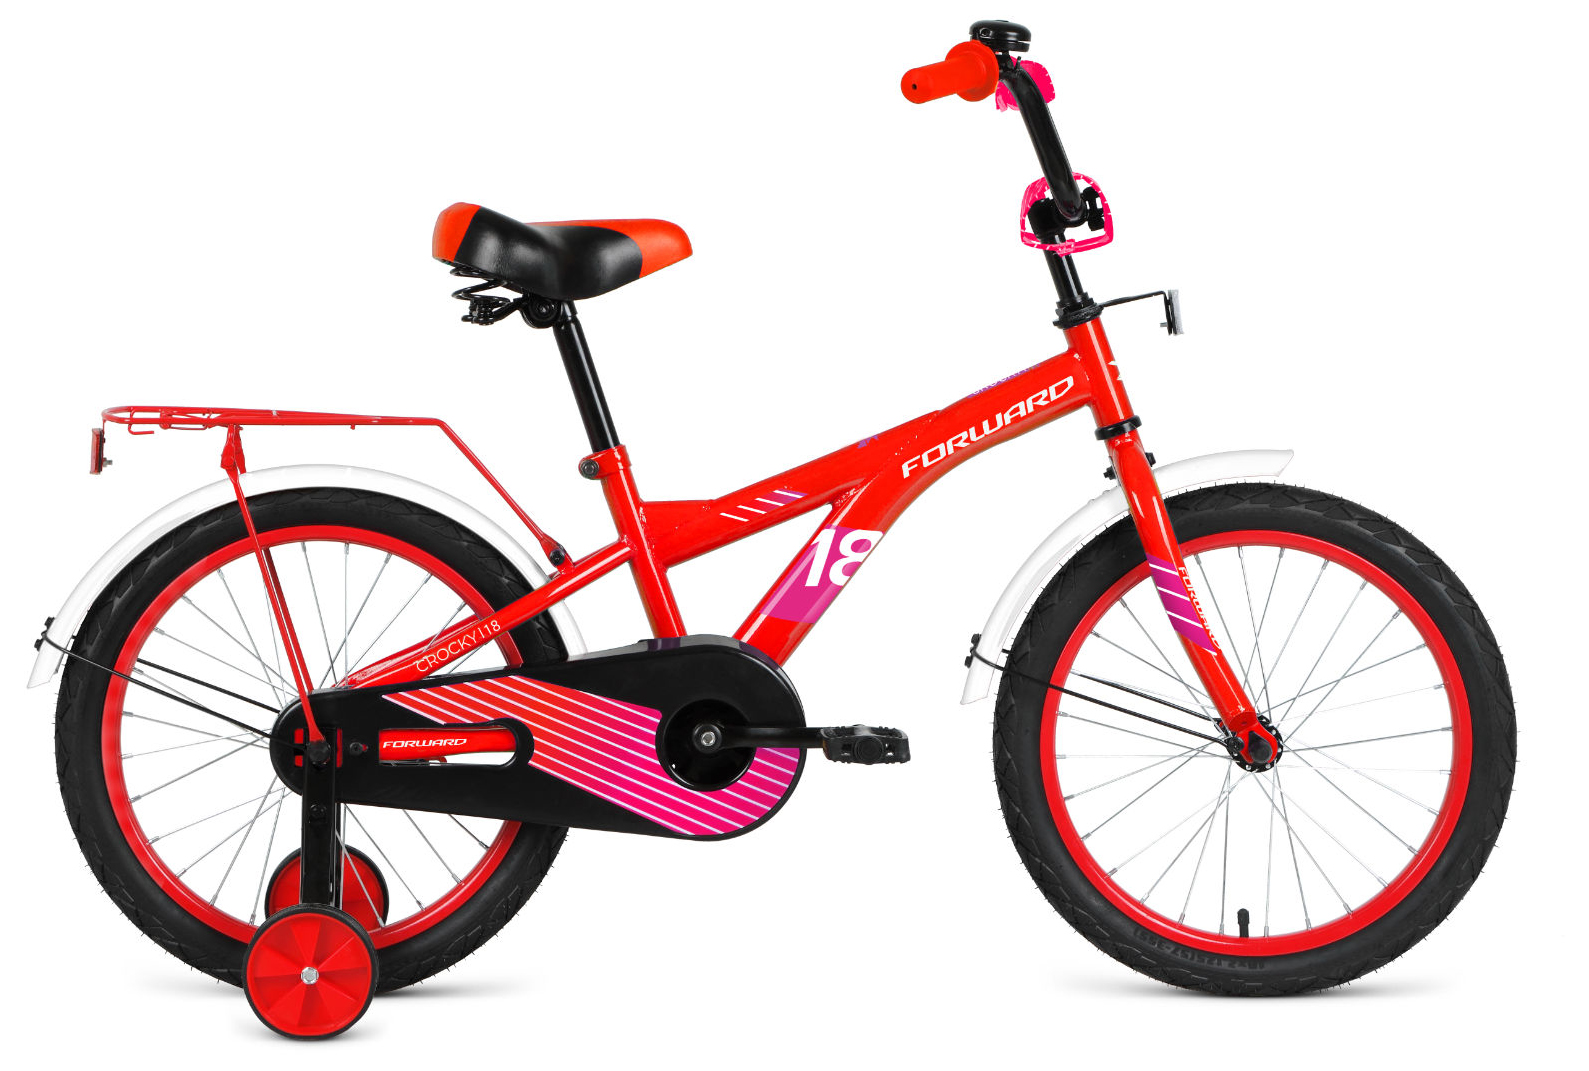  Отзывы о Детском велосипеде Forward Crocky 18 (2021) 2021